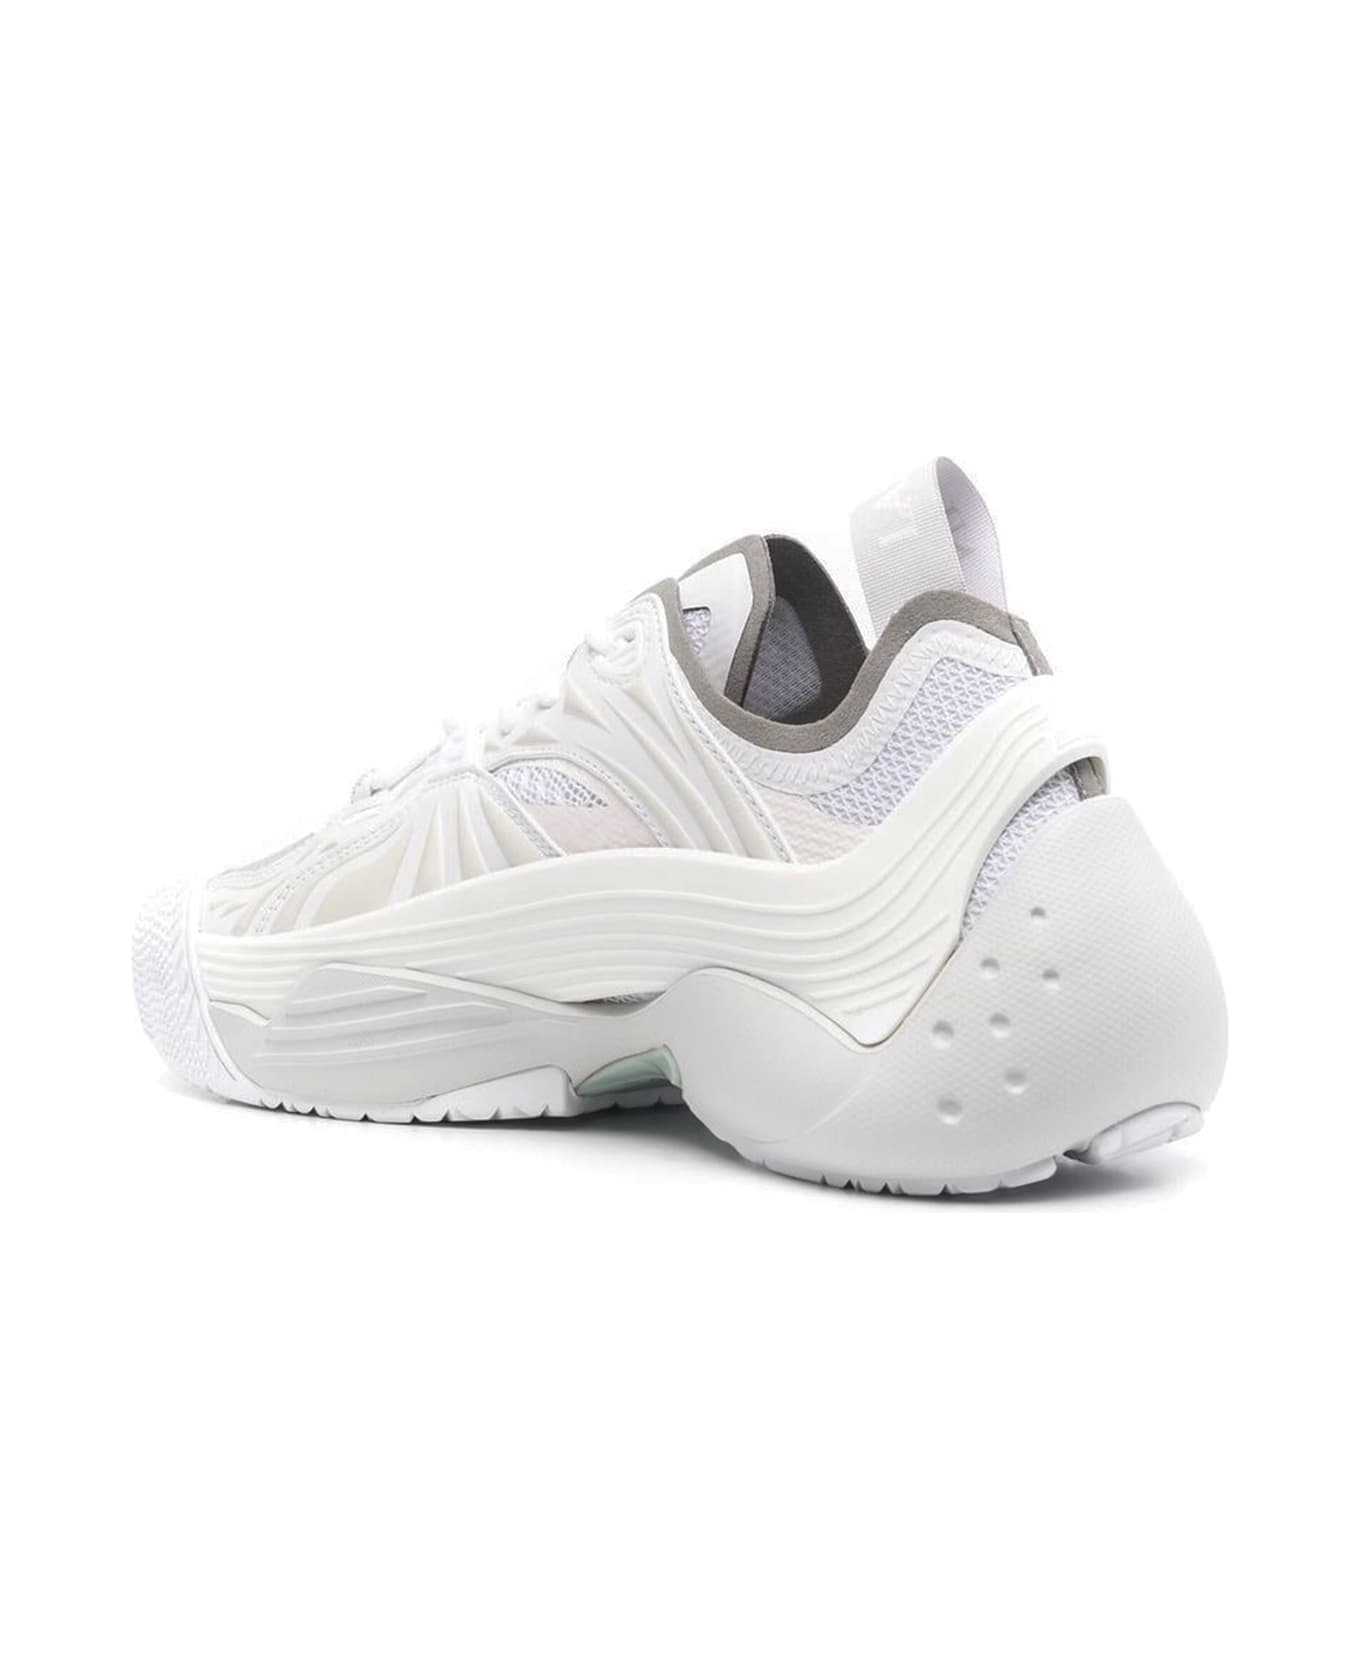 Lanvin White Mesh Flash-x Sneakers - Bianco